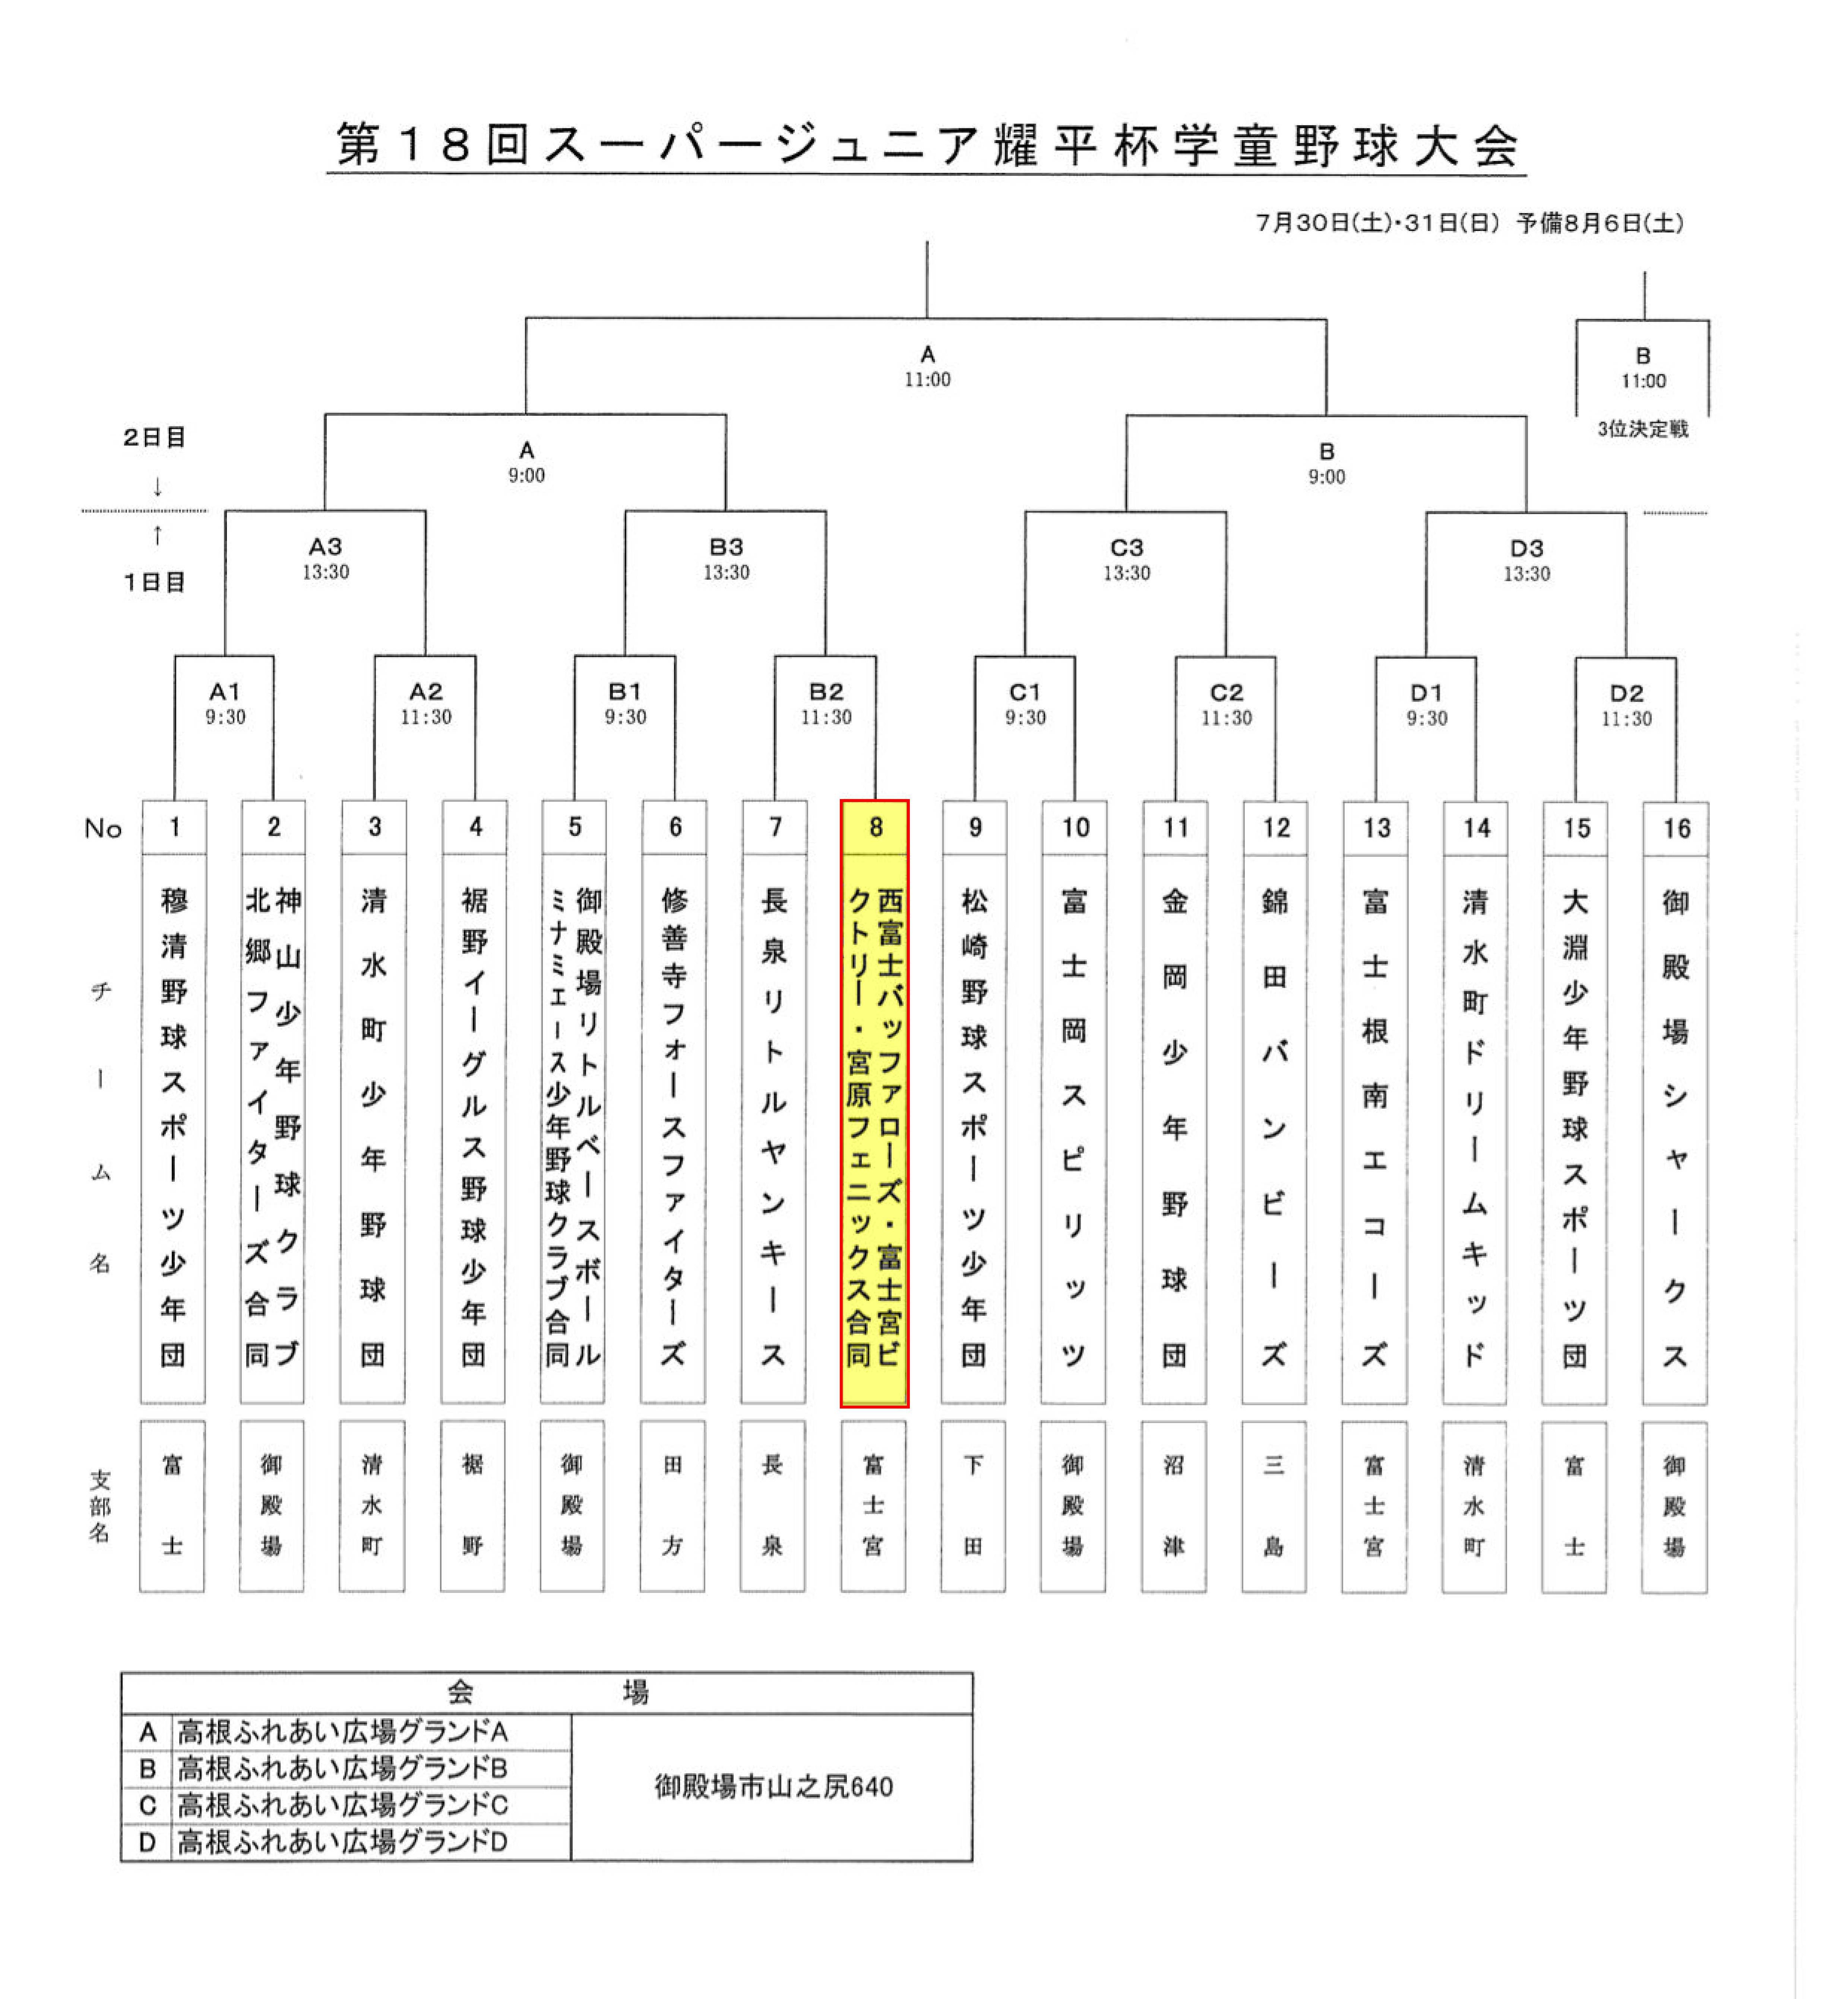 【第18回耀平杯】組合せ・審判割振り表 (1)-1